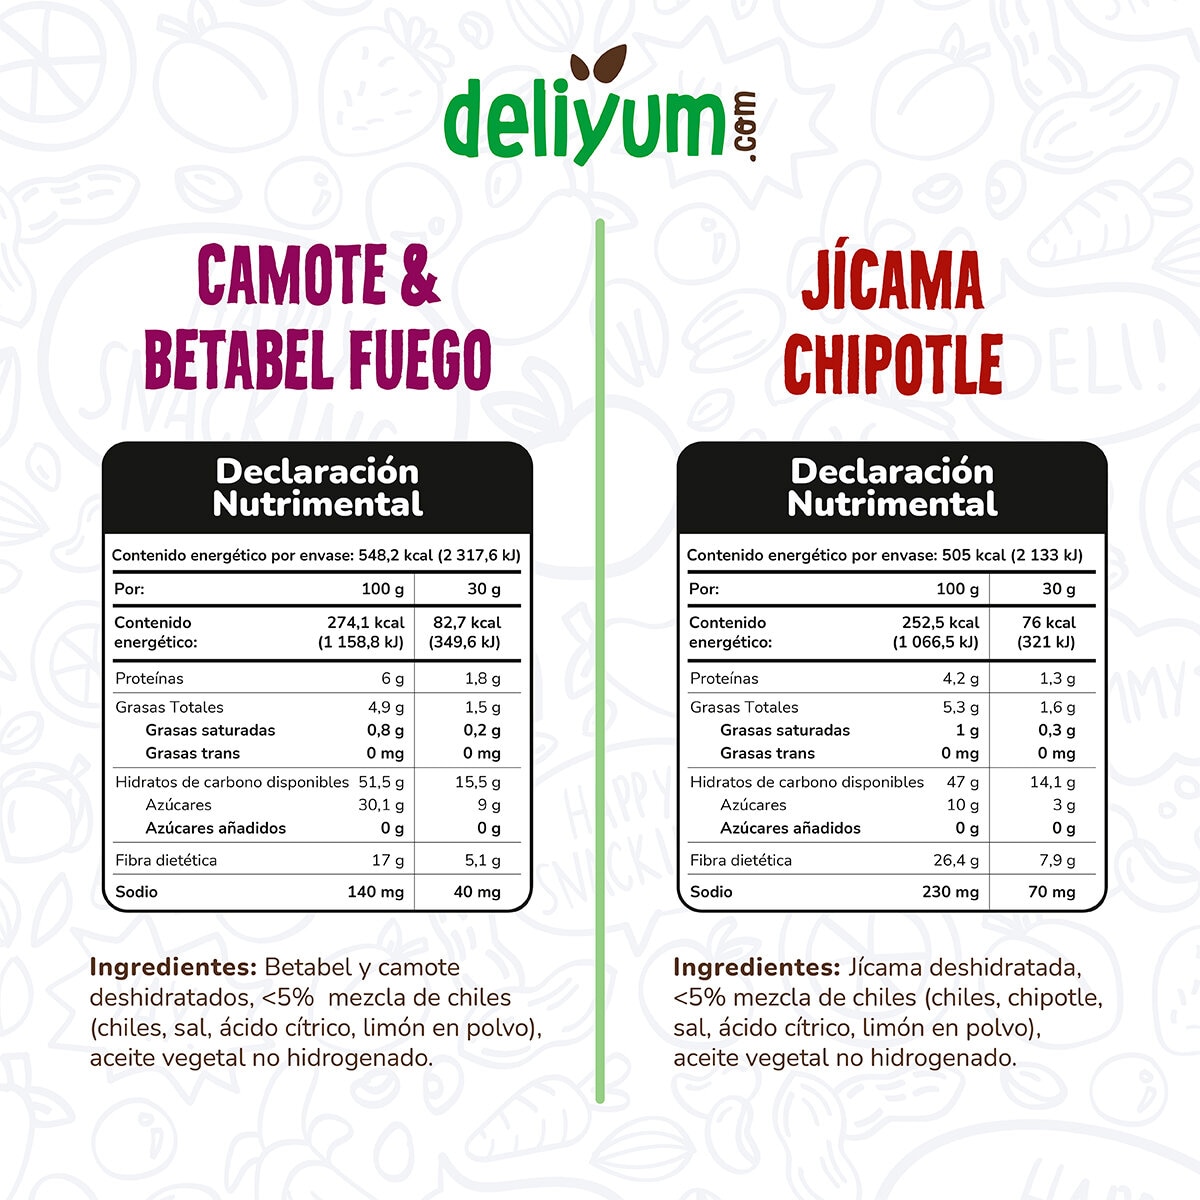 Deliyum.com Mix de Vegetales Deshidratados Jícama Chipotle y Camote & Betabel Fuego 5 pzas de 60g